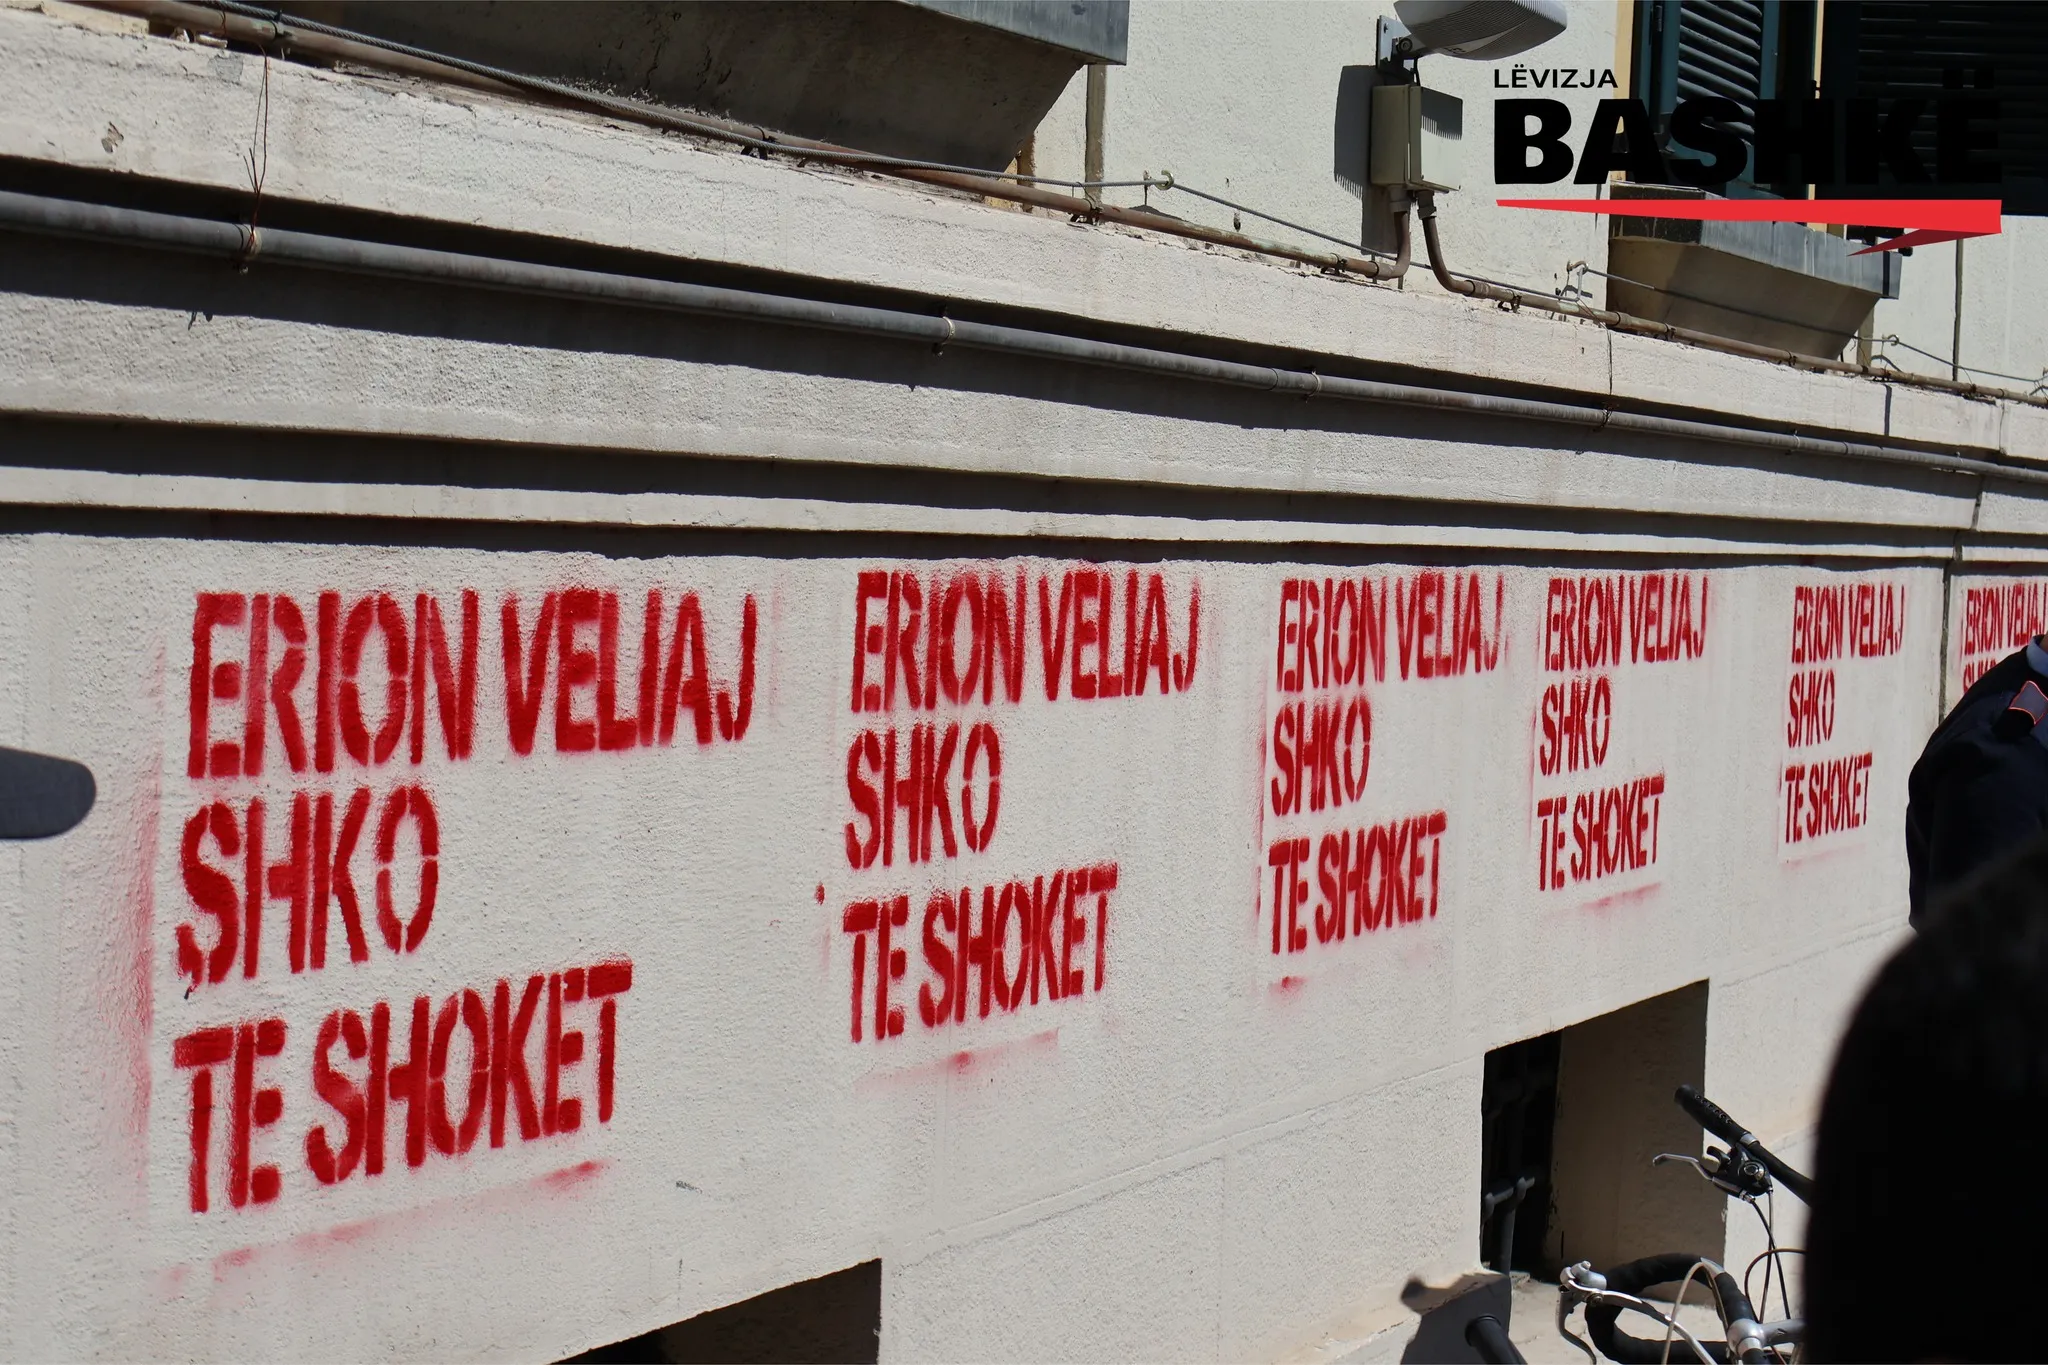 Rezultat nga aksioni i aktivistëve të Lëvizjes, shkrim i kuq në muret e Bashkisë Tiranë 'Erion Veliaj shko te shokët'